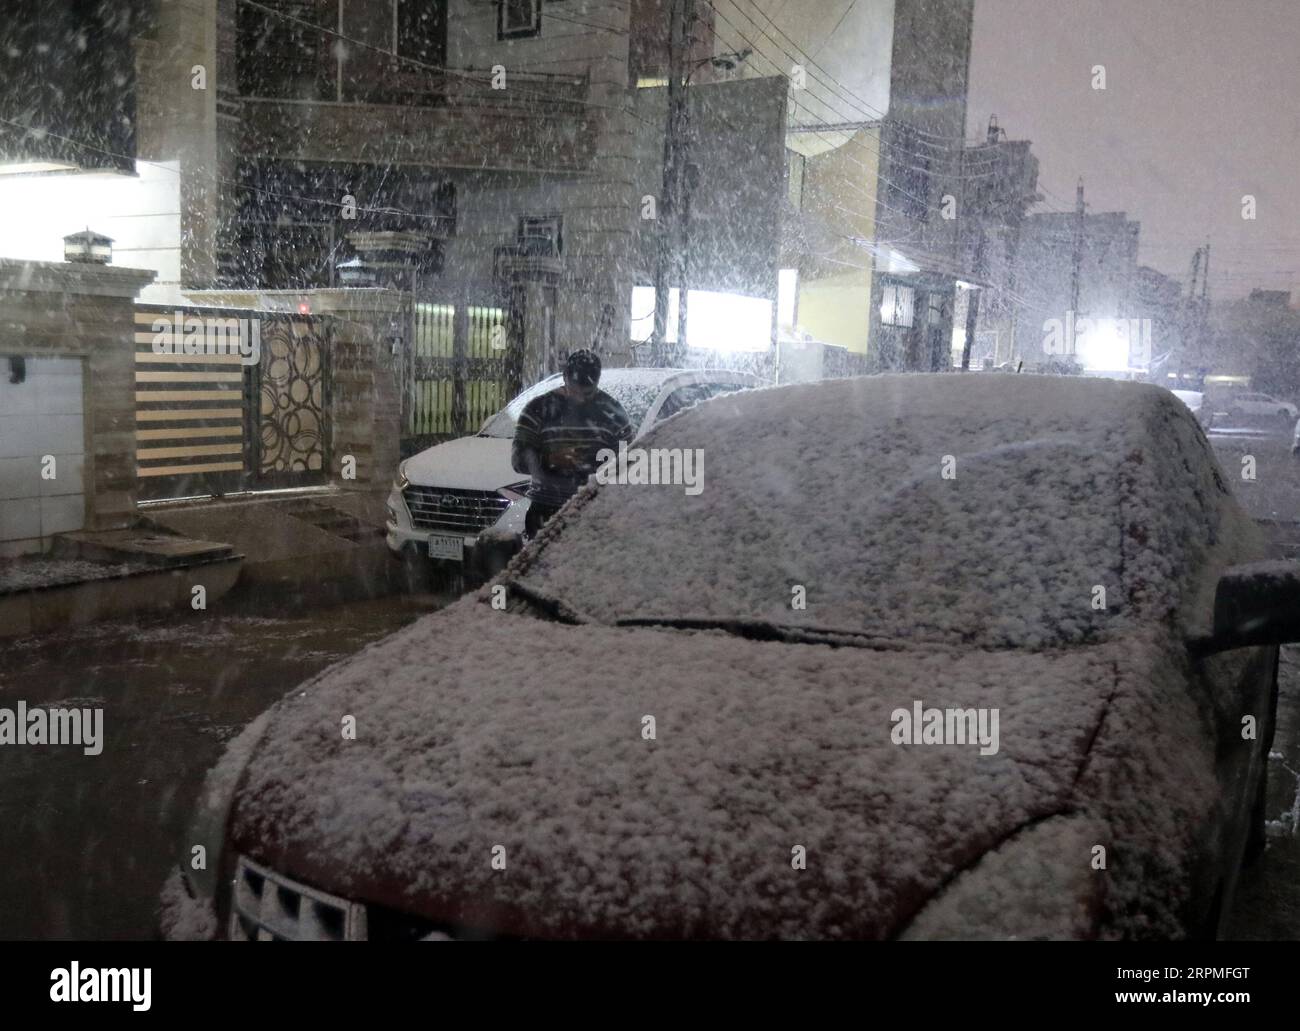 200211 -- BAGHDAD, 11 febbraio 2020 Xinhua -- Un uomo cammina nella neve a Baghdad, Iraq, 11 febbraio 2020. Molte persone nella capitale irachena di Baghdad si sono svegliate presto martedì per assistere a una rara nevicata in città. La neve in Iraq è comunemente vista nella parte settentrionale del paese, in particolare nelle zone montane. Per la maggior parte dei cittadini di Baghdad, è raro per loro vedere la neve. Baghdad ha assistito a nevicate nel gennaio 2008 per la prima volta in oltre 100 anni. Xinhua/Khalil Dawood IRAQ-BAGHDAD-SNOW PUBLICATIONxNOTxINxCHN Foto Stock